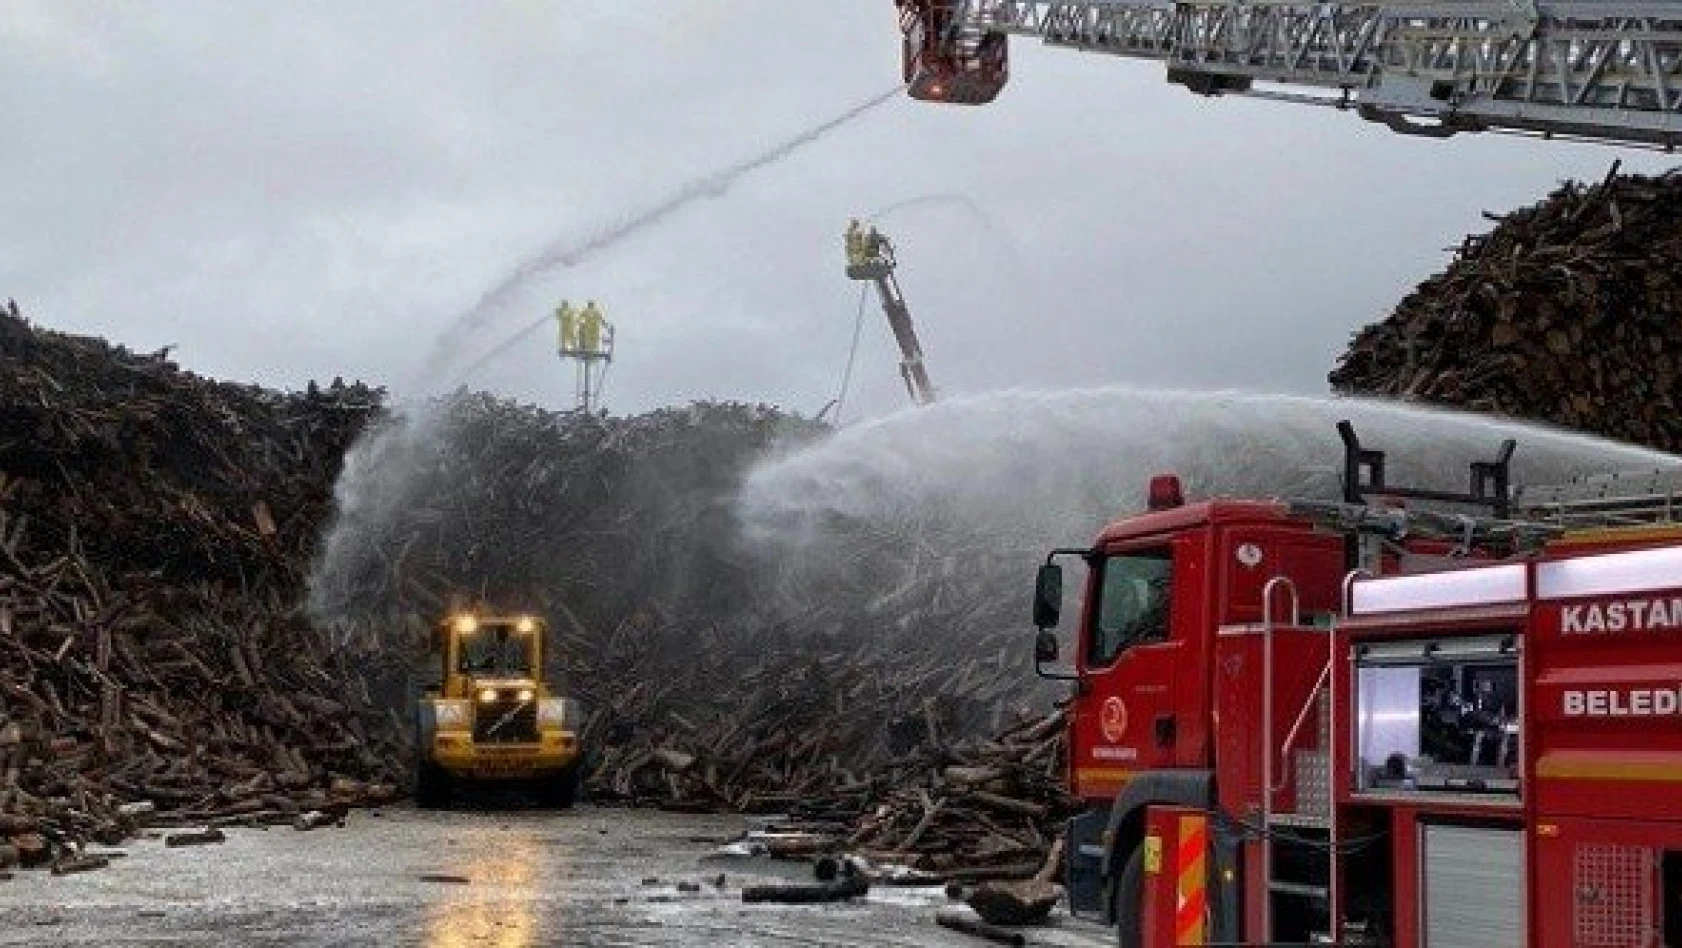 Kastamonu OSB'deki yangının çıkış nedeni belli oldu